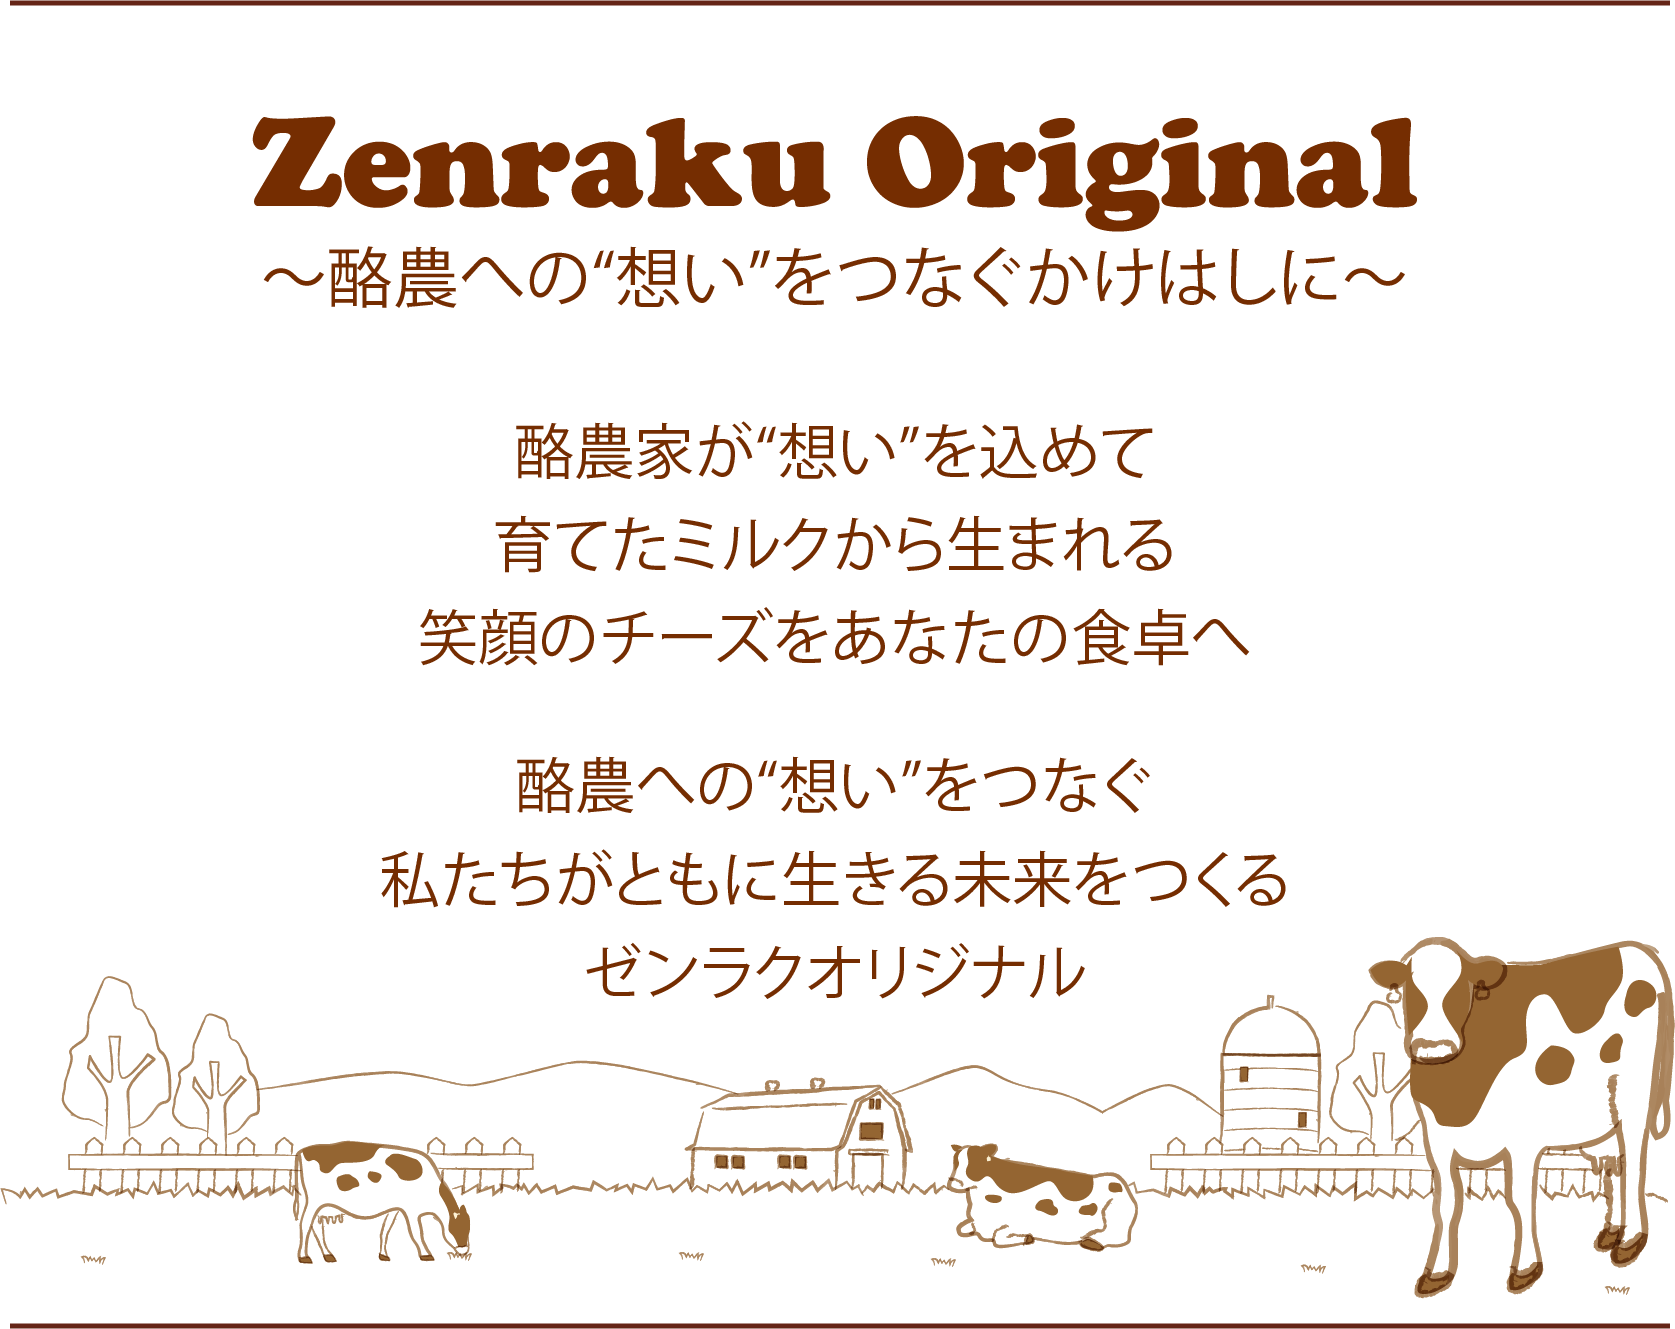 Zenraku Original　～酪農への“想い”をつなぐかけはしに～　酪農家が“想い”を込めて 育てたミルクから生まれる 笑顔のチーズをあなたの食卓へ 酪農への“想い”をつなぐ 私たちがともに生きる未来をつくる ゼンラクオリジナル